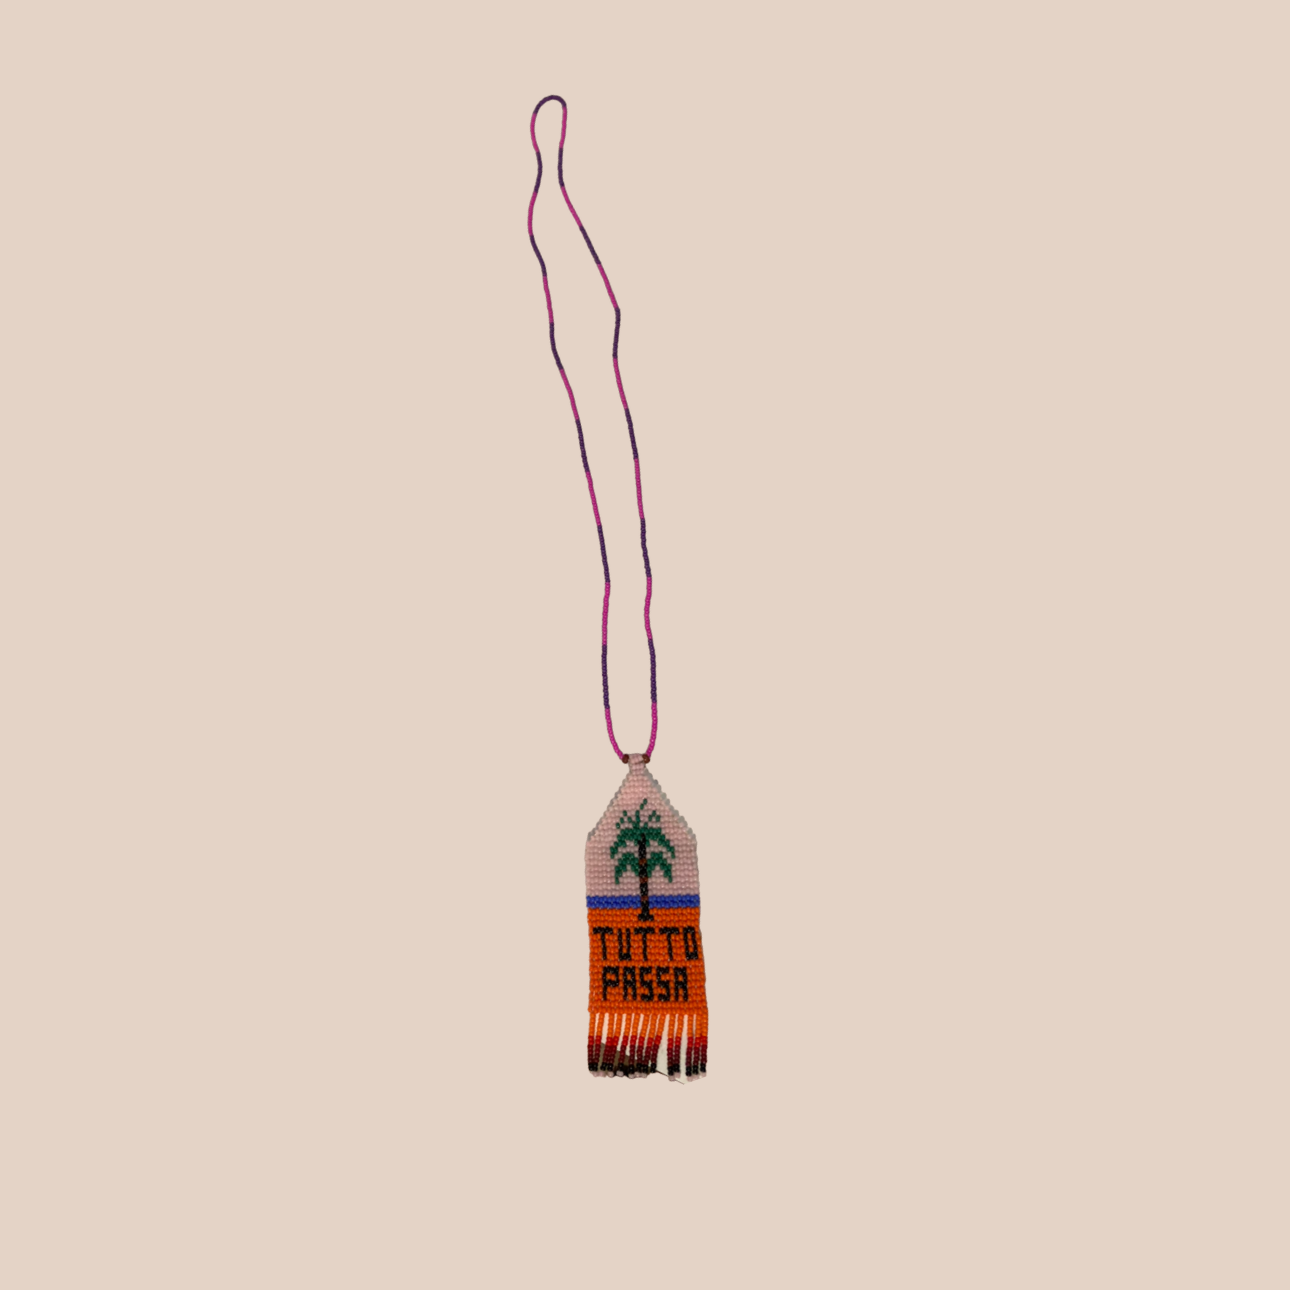 Image du collier motif palmier, inscription "TUTTO PASSA" de Maison Badigo, collier en perles multicolore unique et tendance